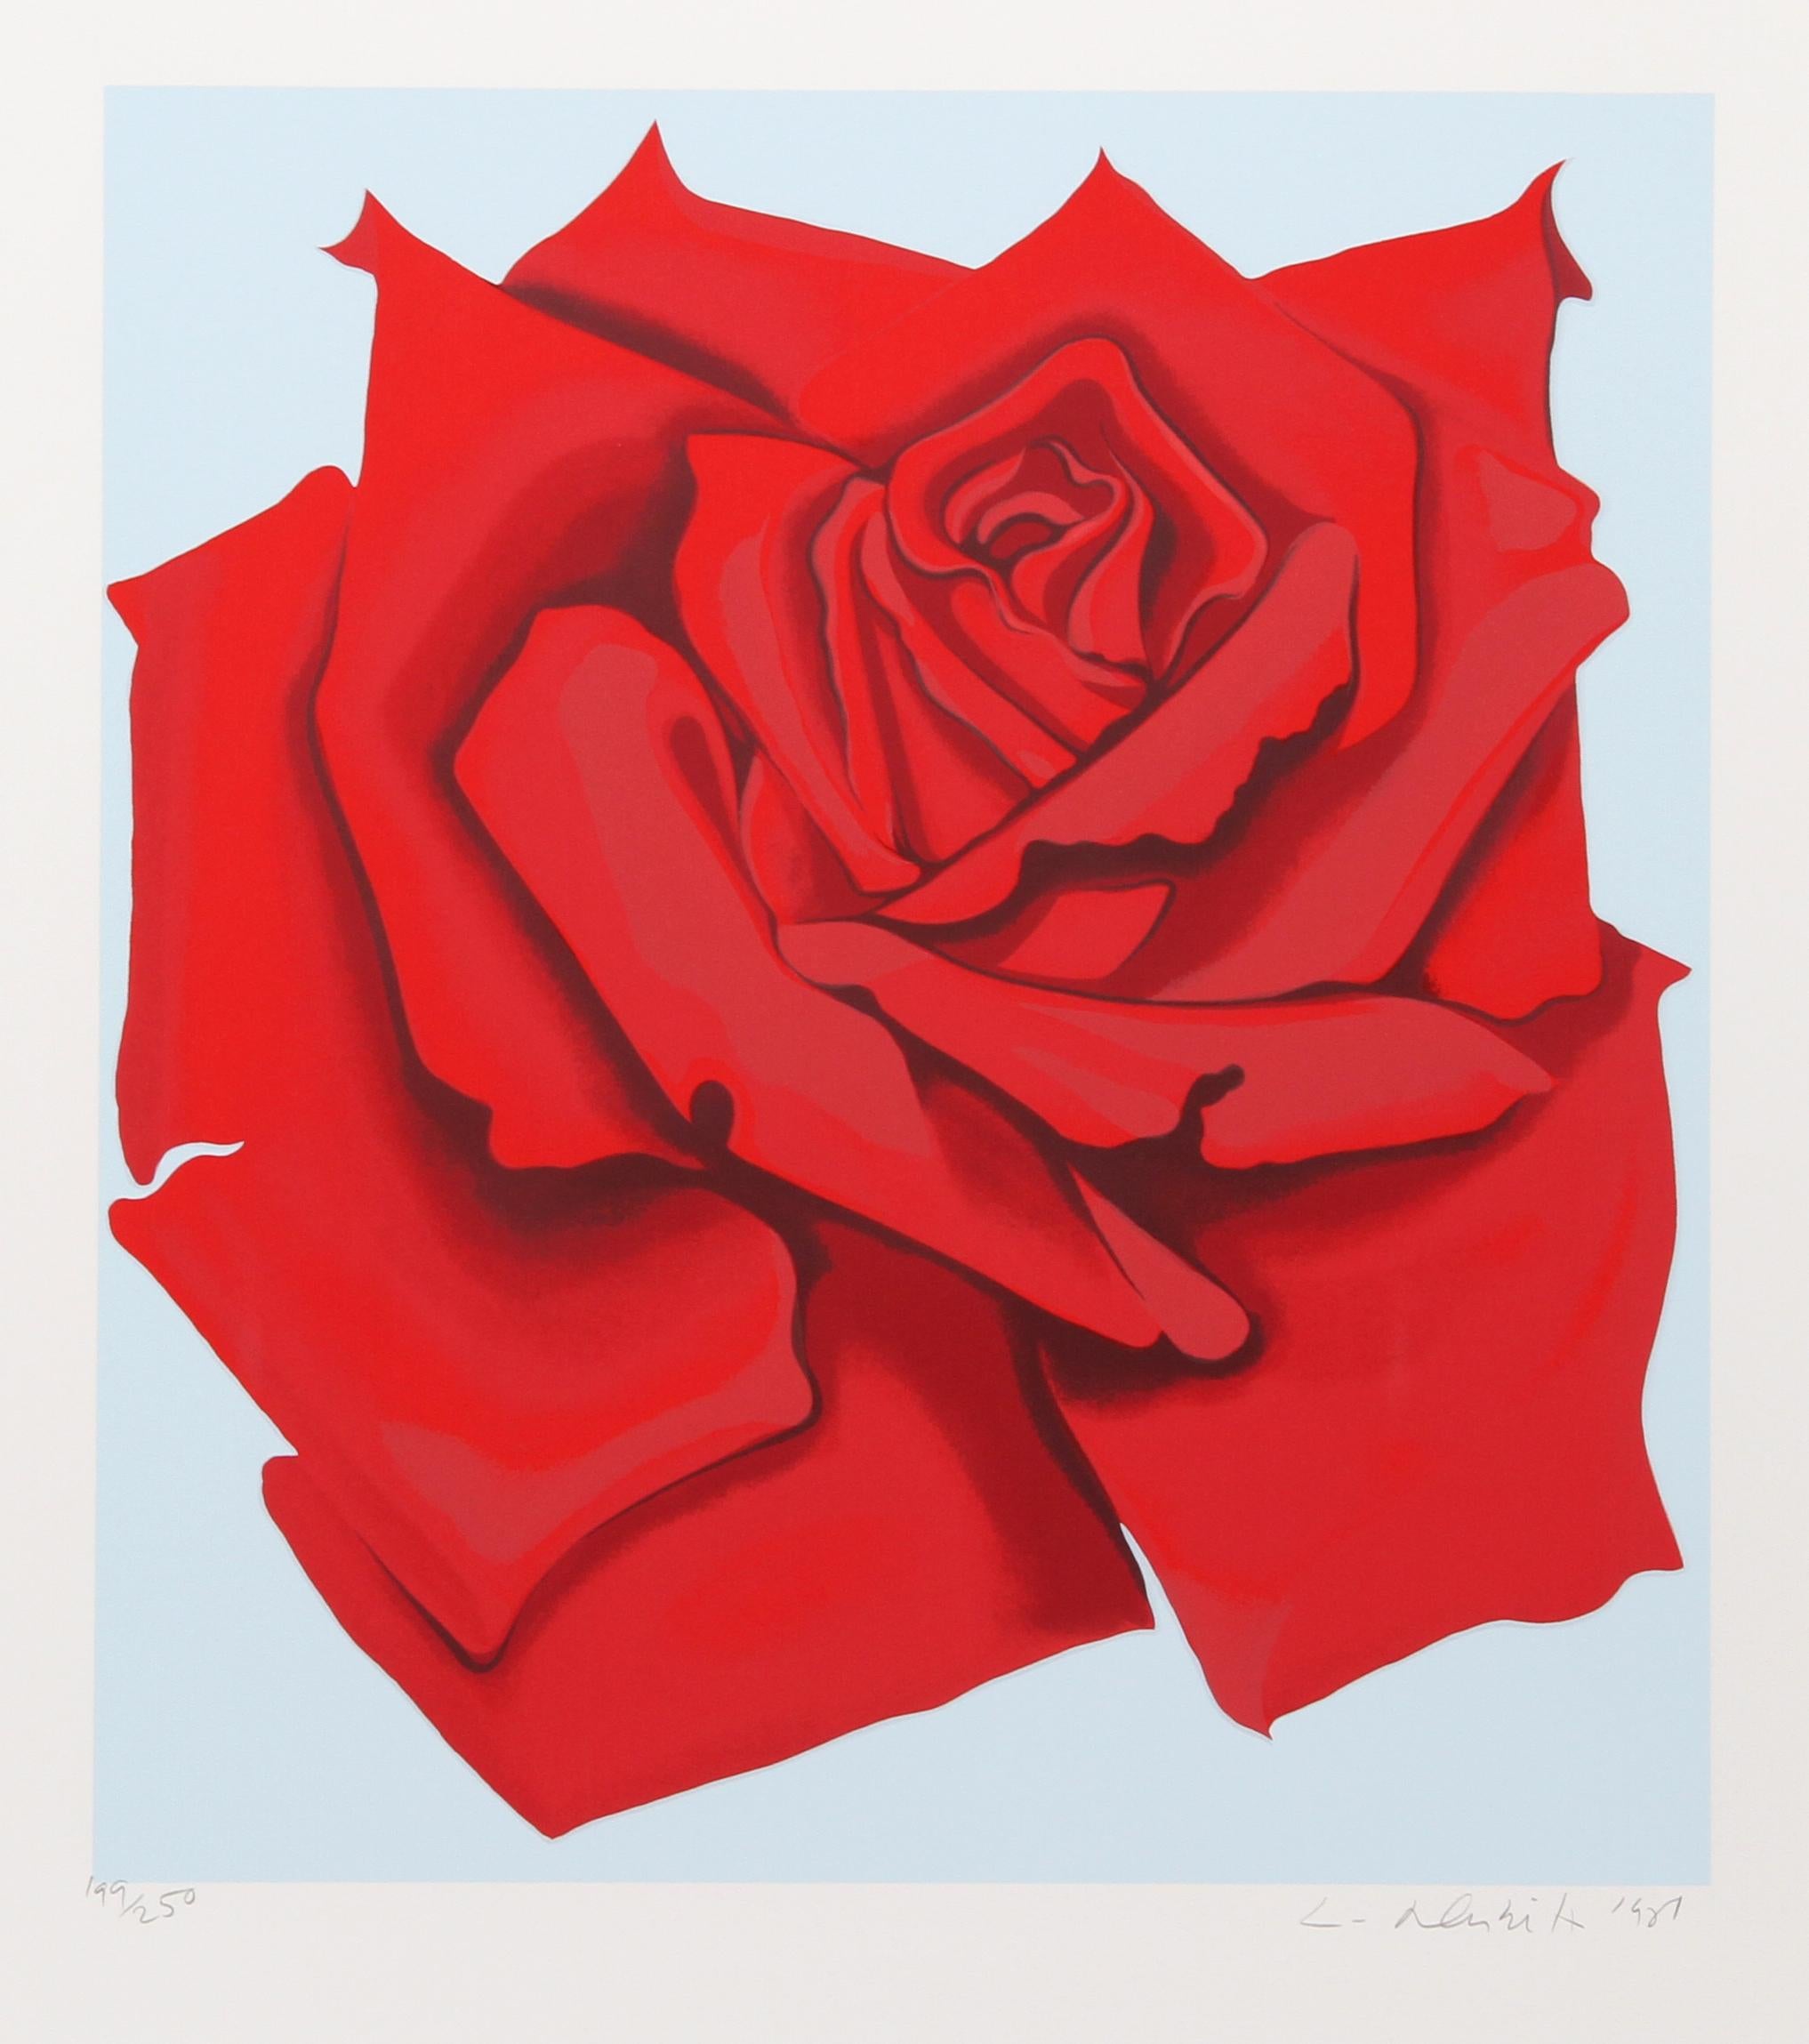 Rote Rose aus der Stamps-Serie, Siebdruck von Lowell Nesbitt